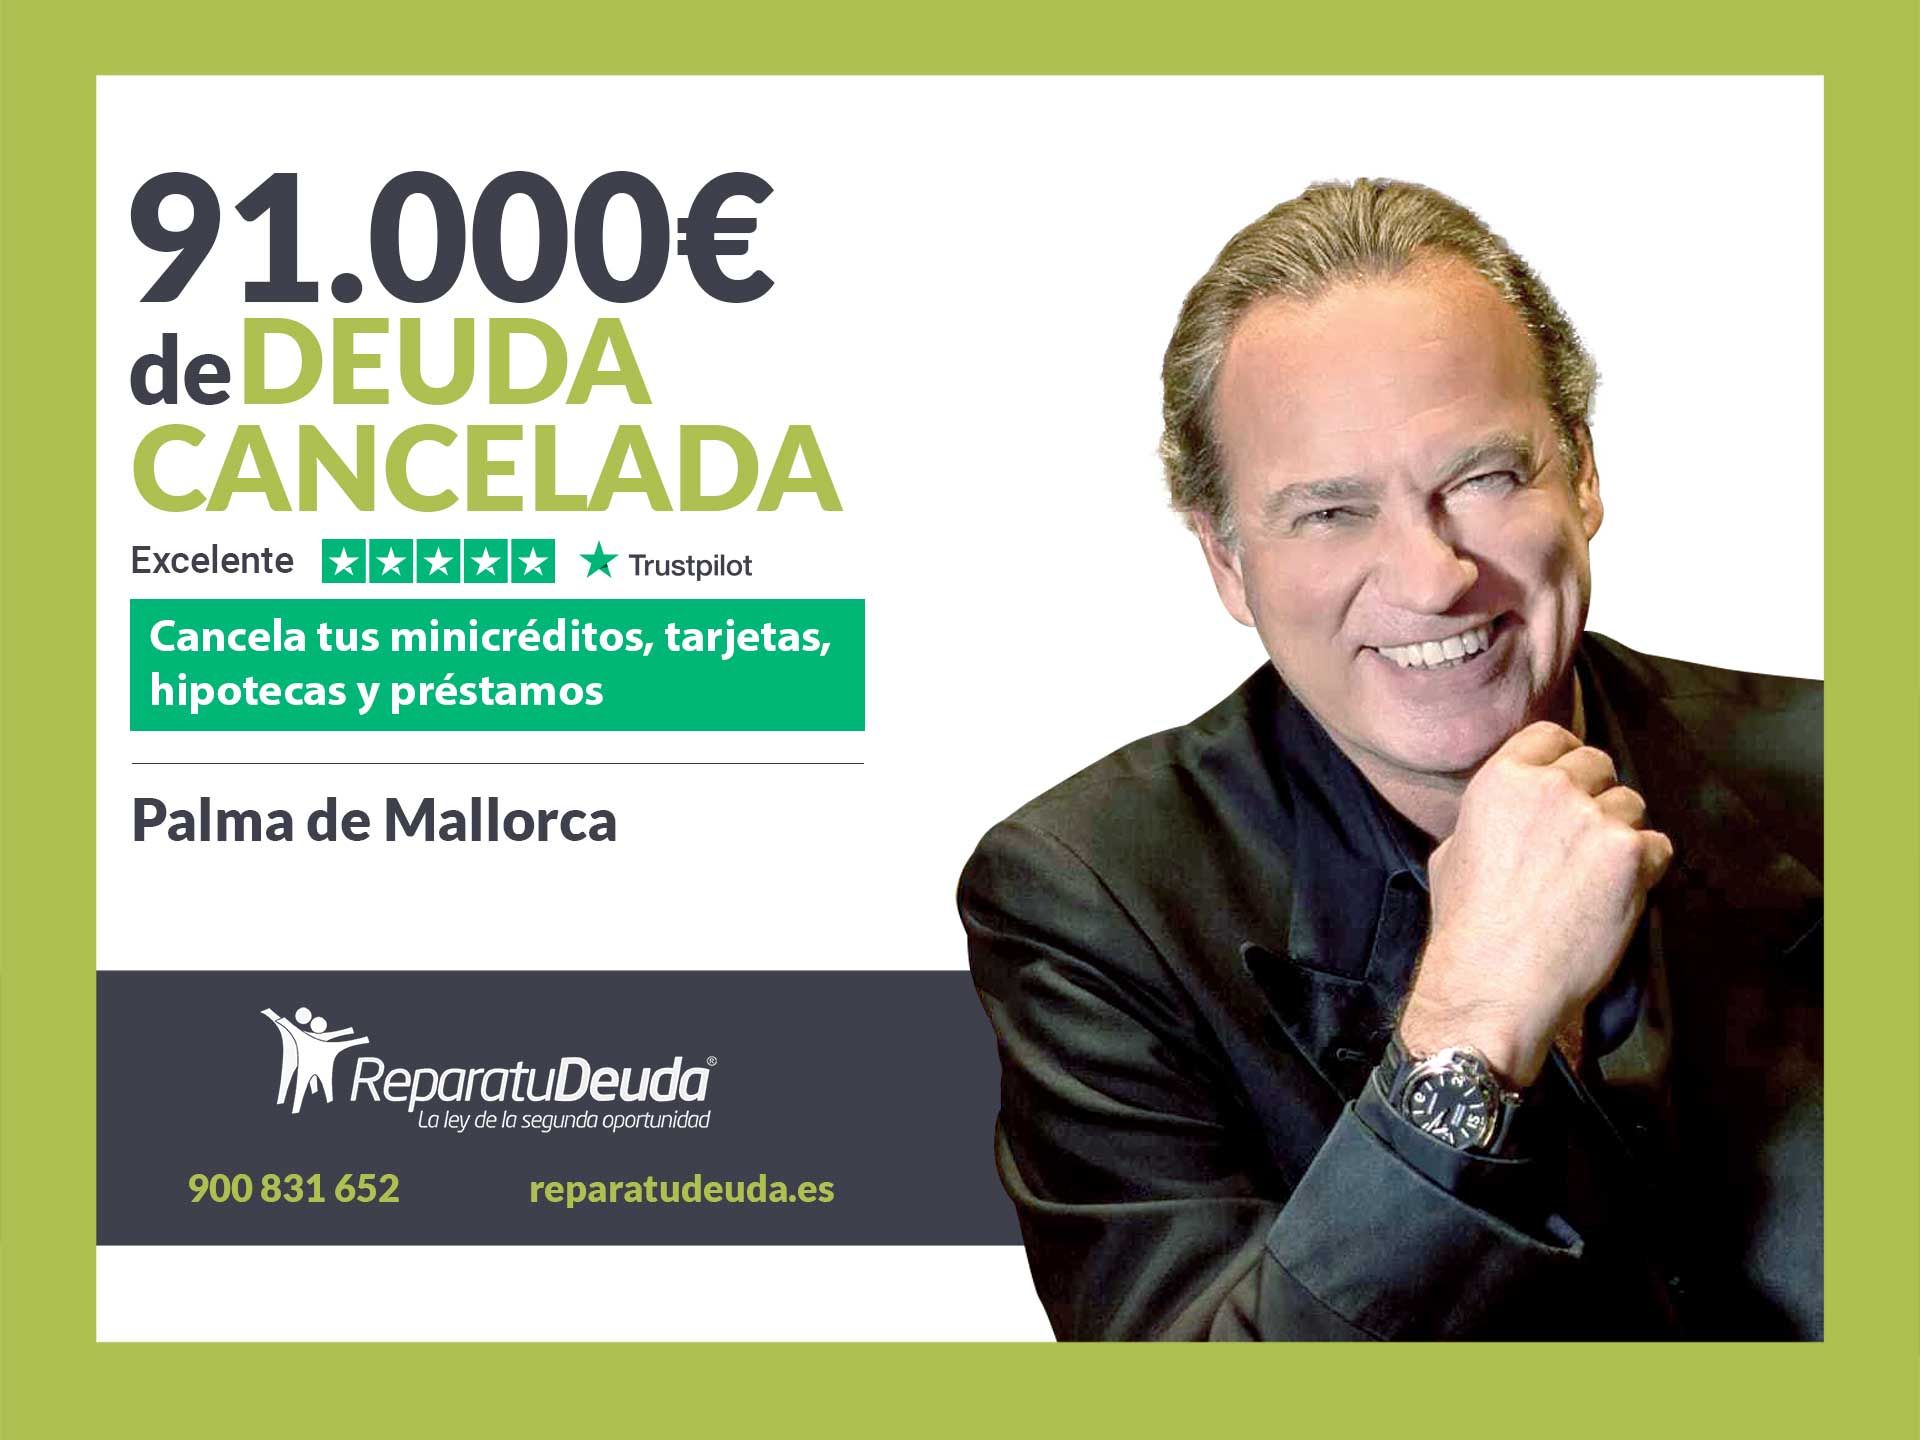 Repara tu Deuda Abogados cancela 91.000? en Palma de Mallorca (Baleares) con la Ley de Segunda Oportunidad